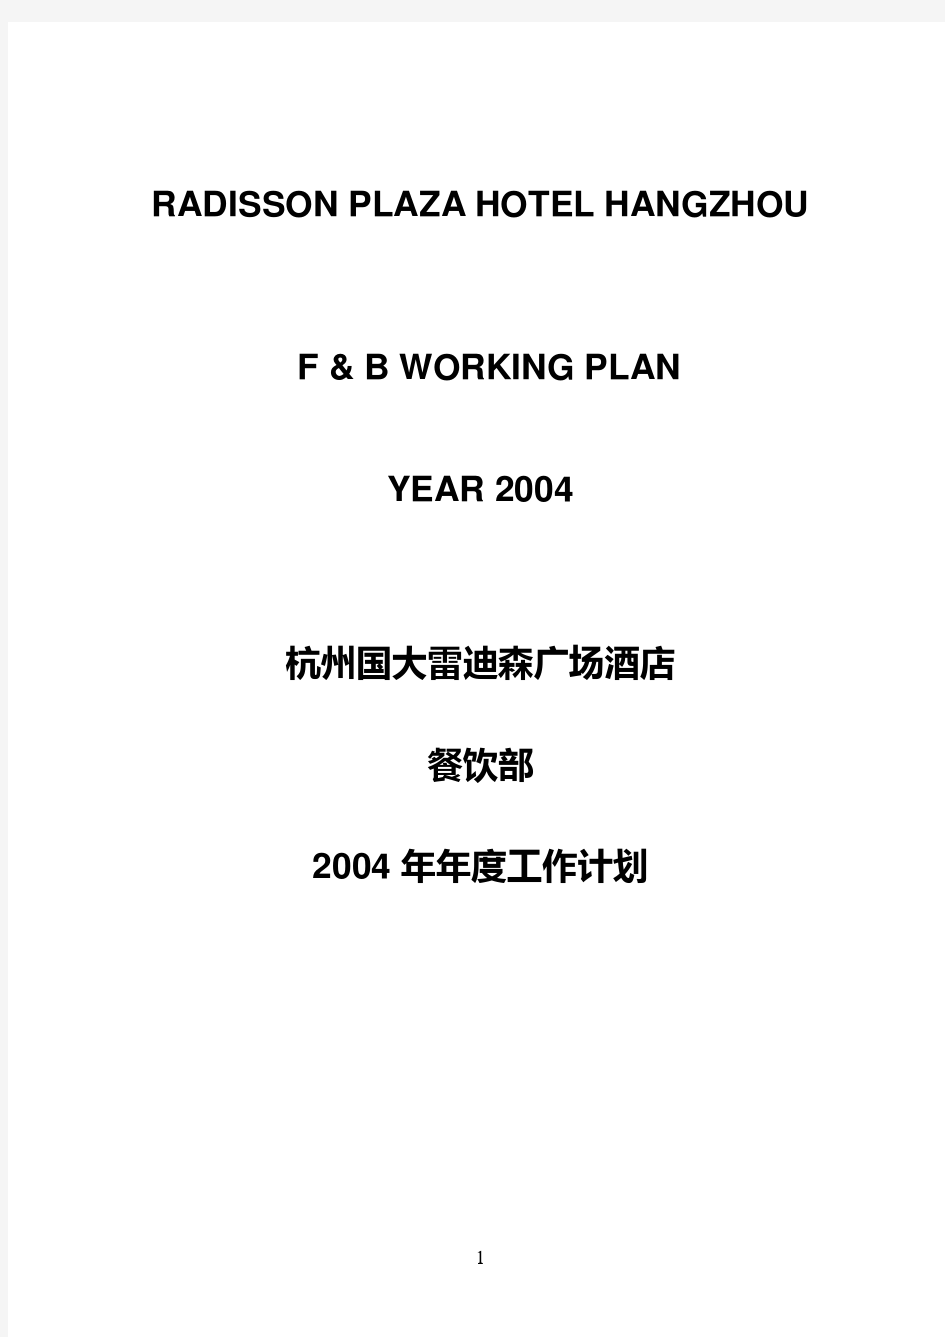 雷迪森餐饮部全年工作计划F&B 2004 Plan